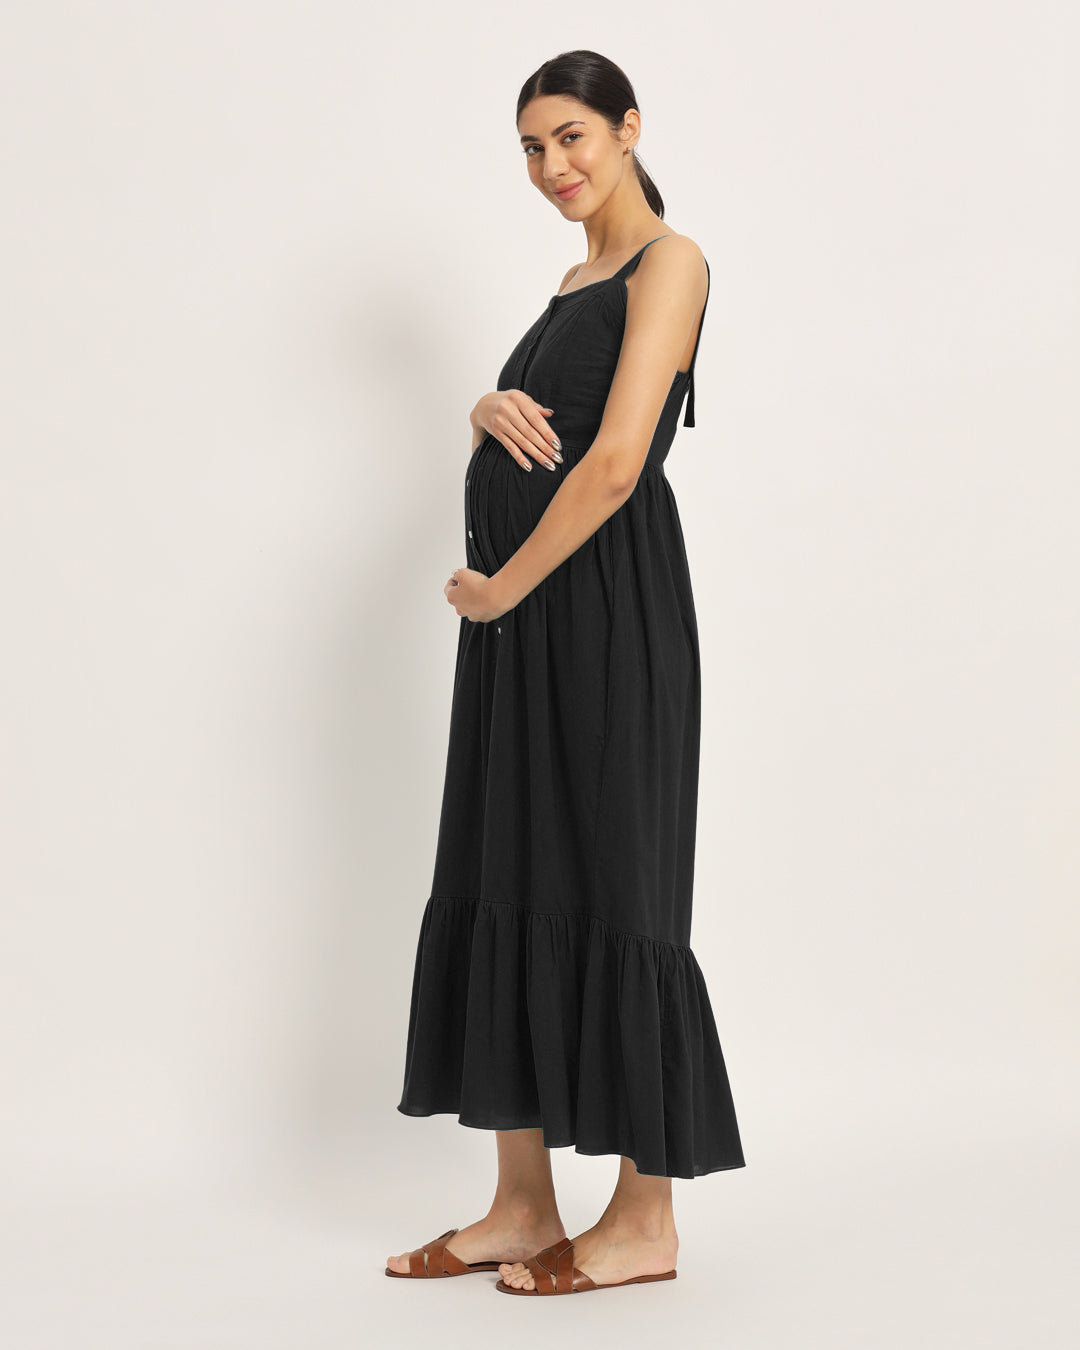 Combo: Black & Iris Pink Mama Modish Maternity & Nursing Dress